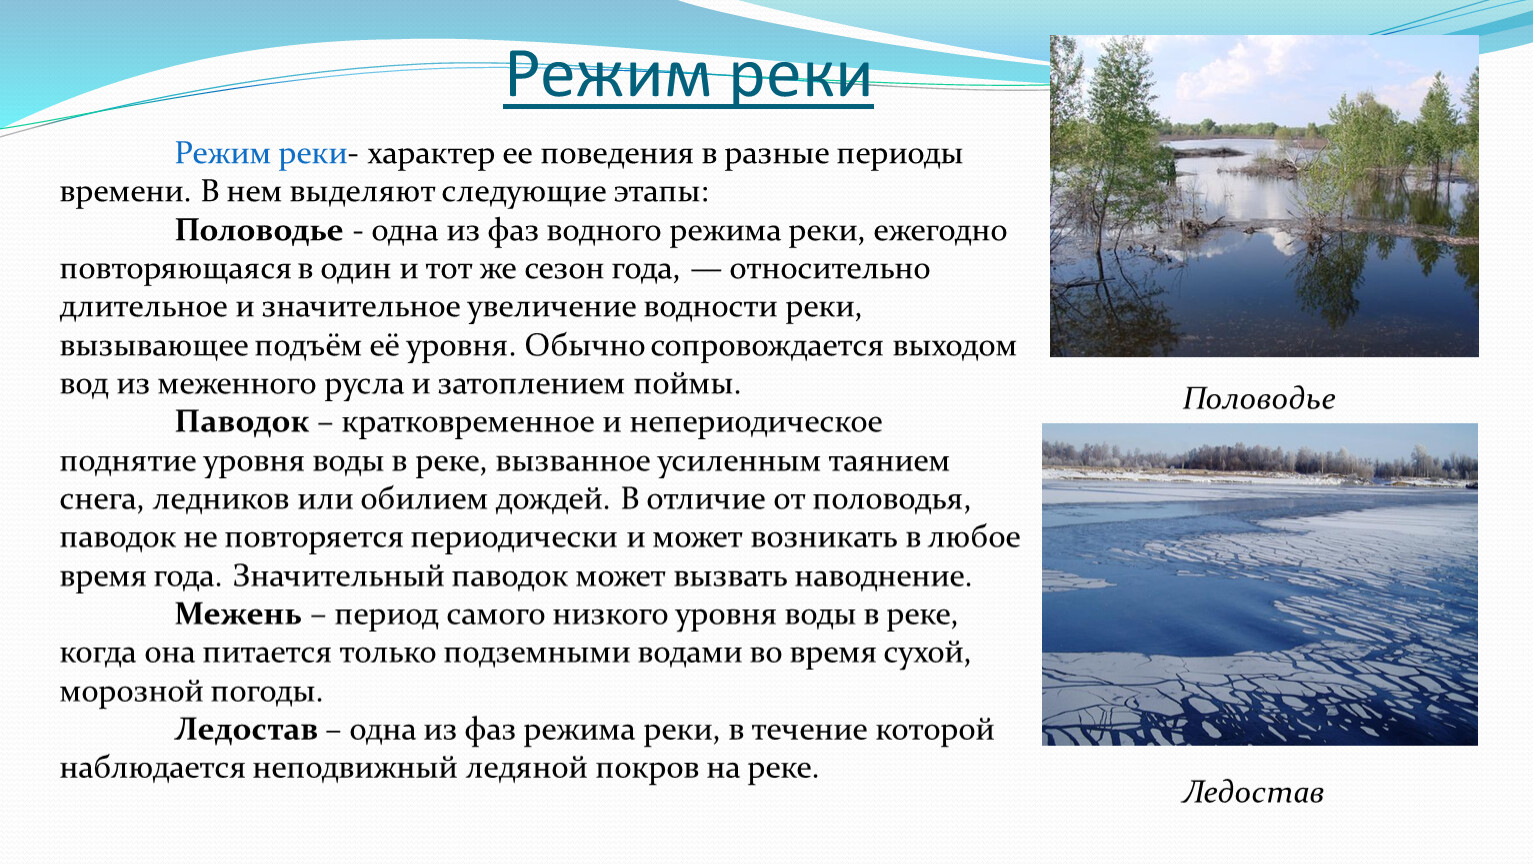 Изменение режима рек связано. Характер реки. Периоды режима рек. Режим рек Кемеровской области. Режим реки Пышма.